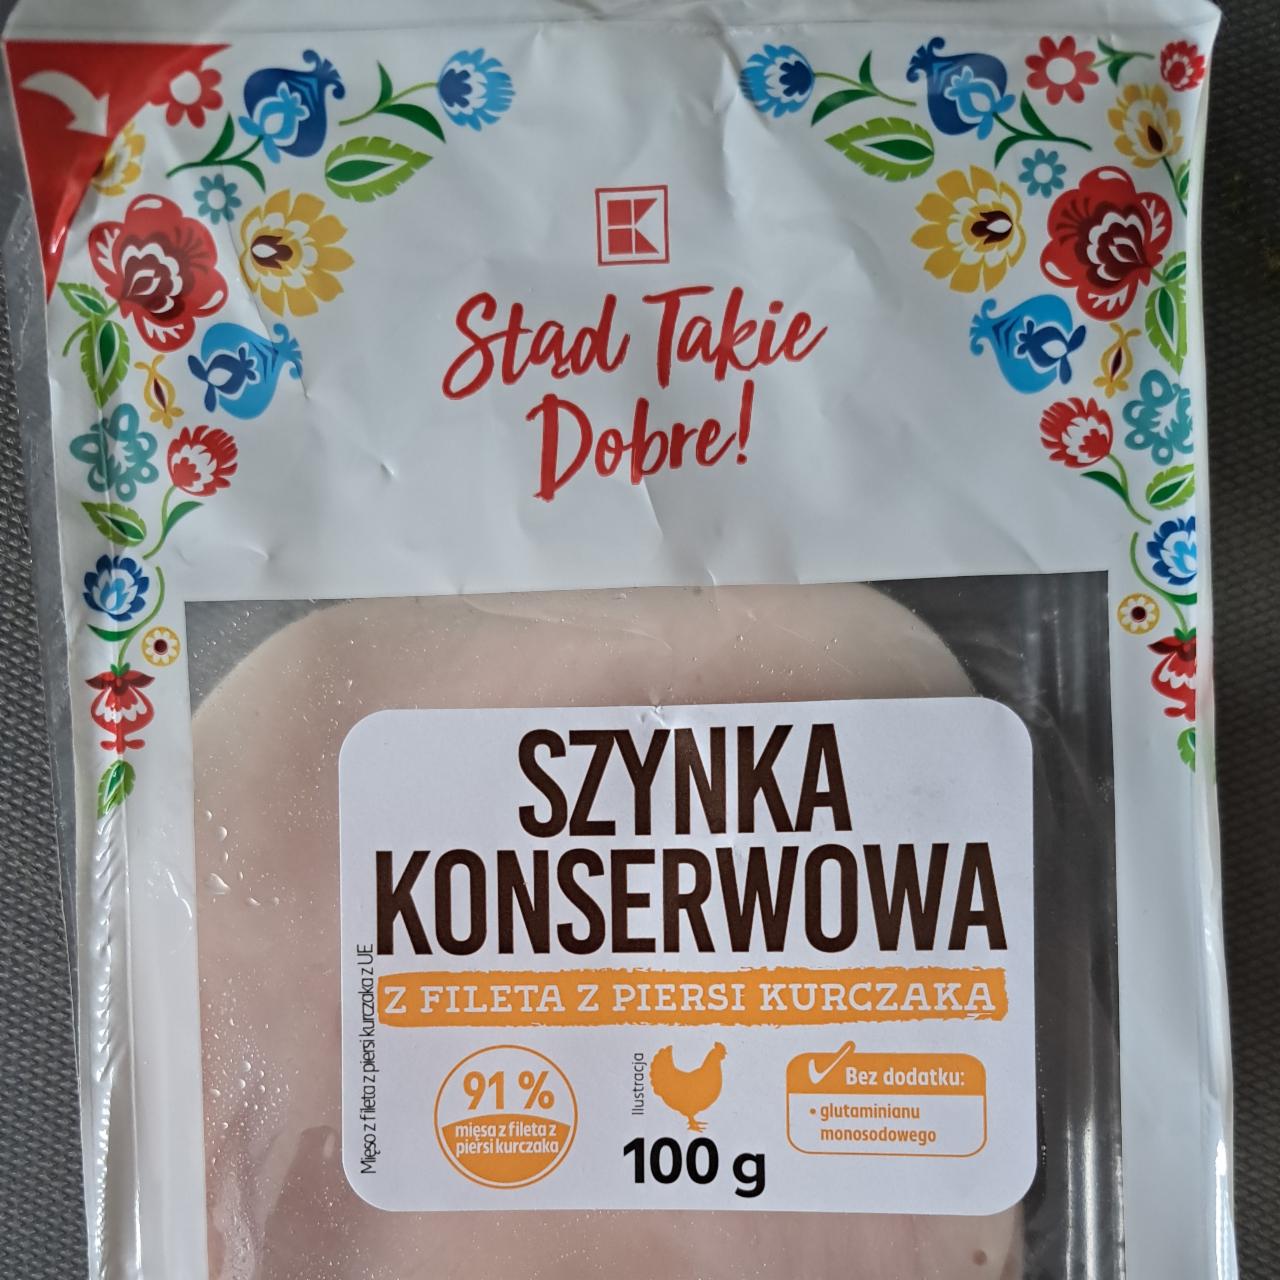 Fotografie - Szynka konserwowa z fileta z piersi kurczaka K-Stąd Takie Dobre!